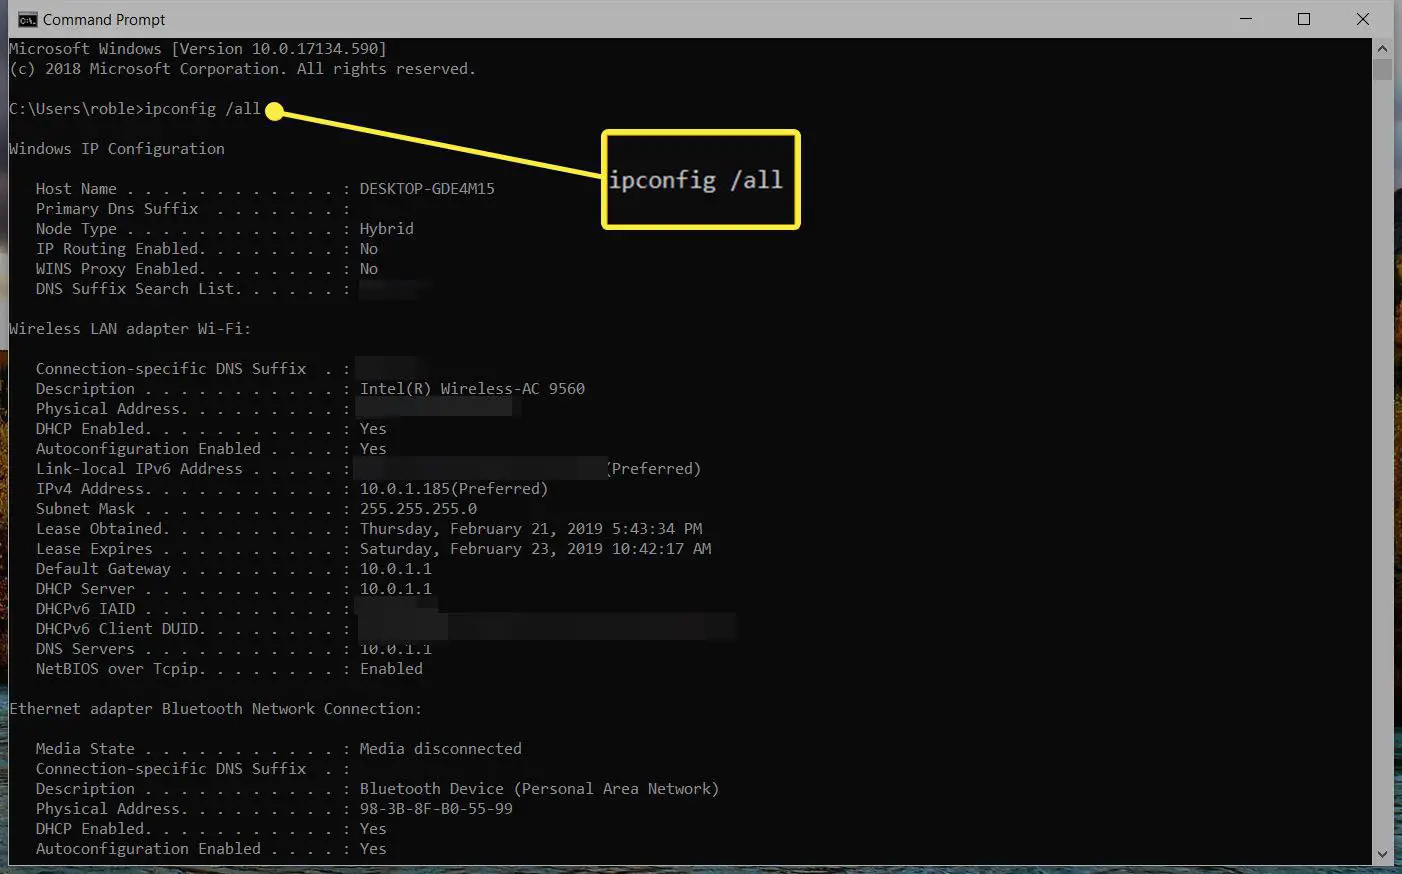 captura de tela do comando ipconfig / all e resulta no prompt de comando via Windows 10